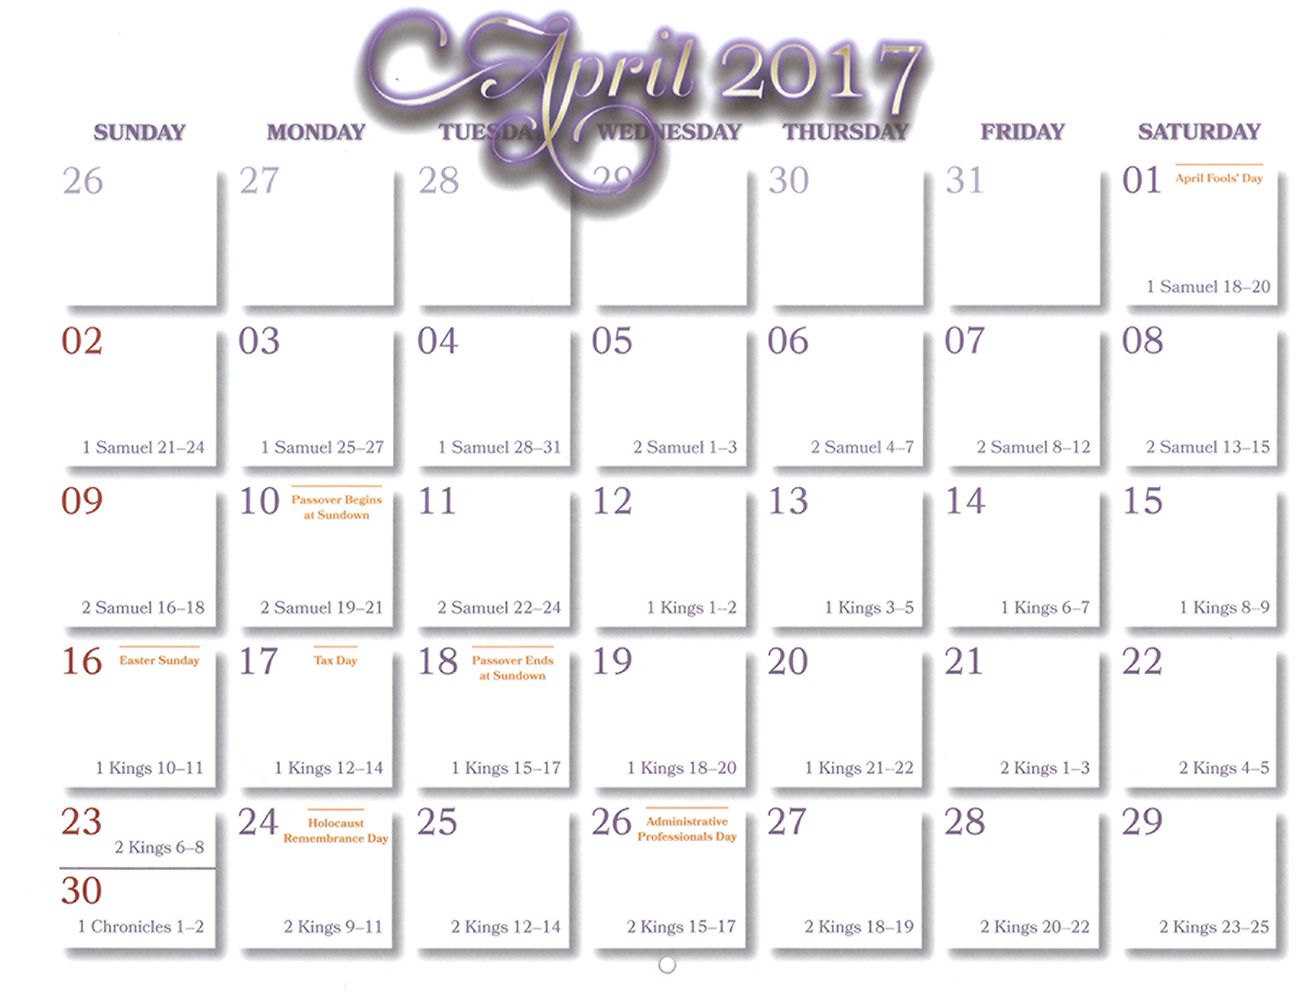 2016 Prophecy Calendar: April - Calendar